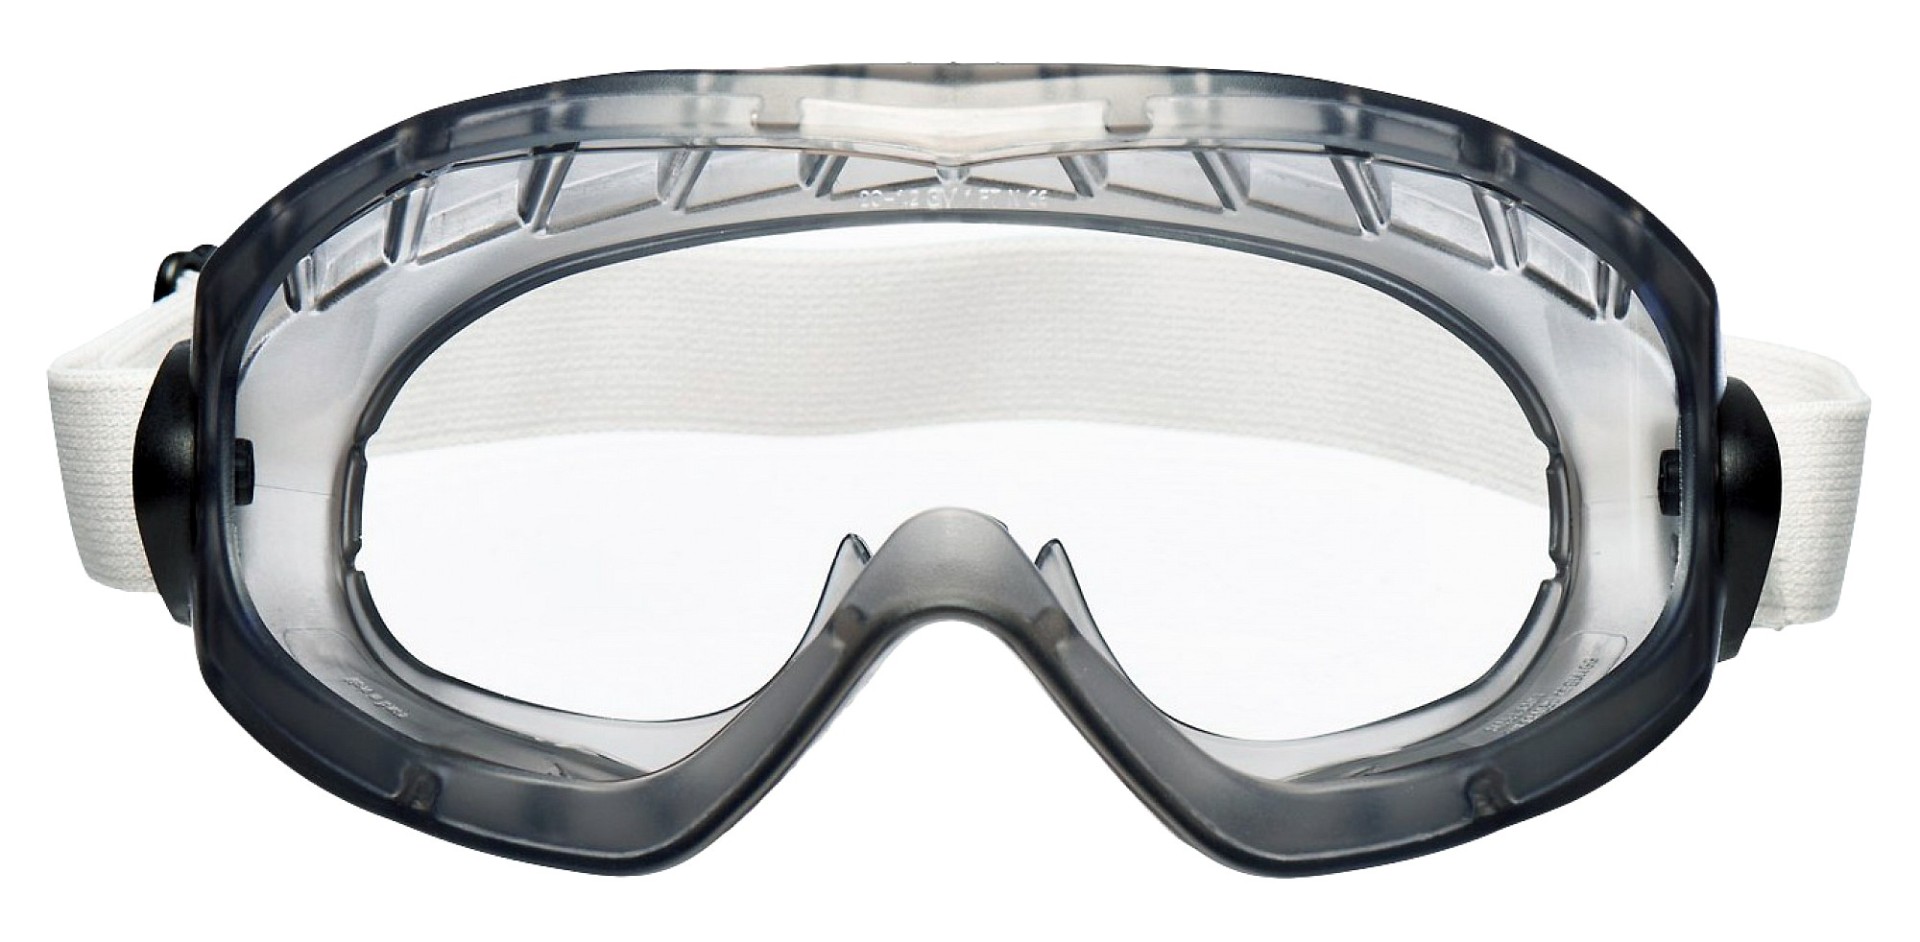 Как выбрать защитные очки: рейтинг лучших моделей для защиты глаз